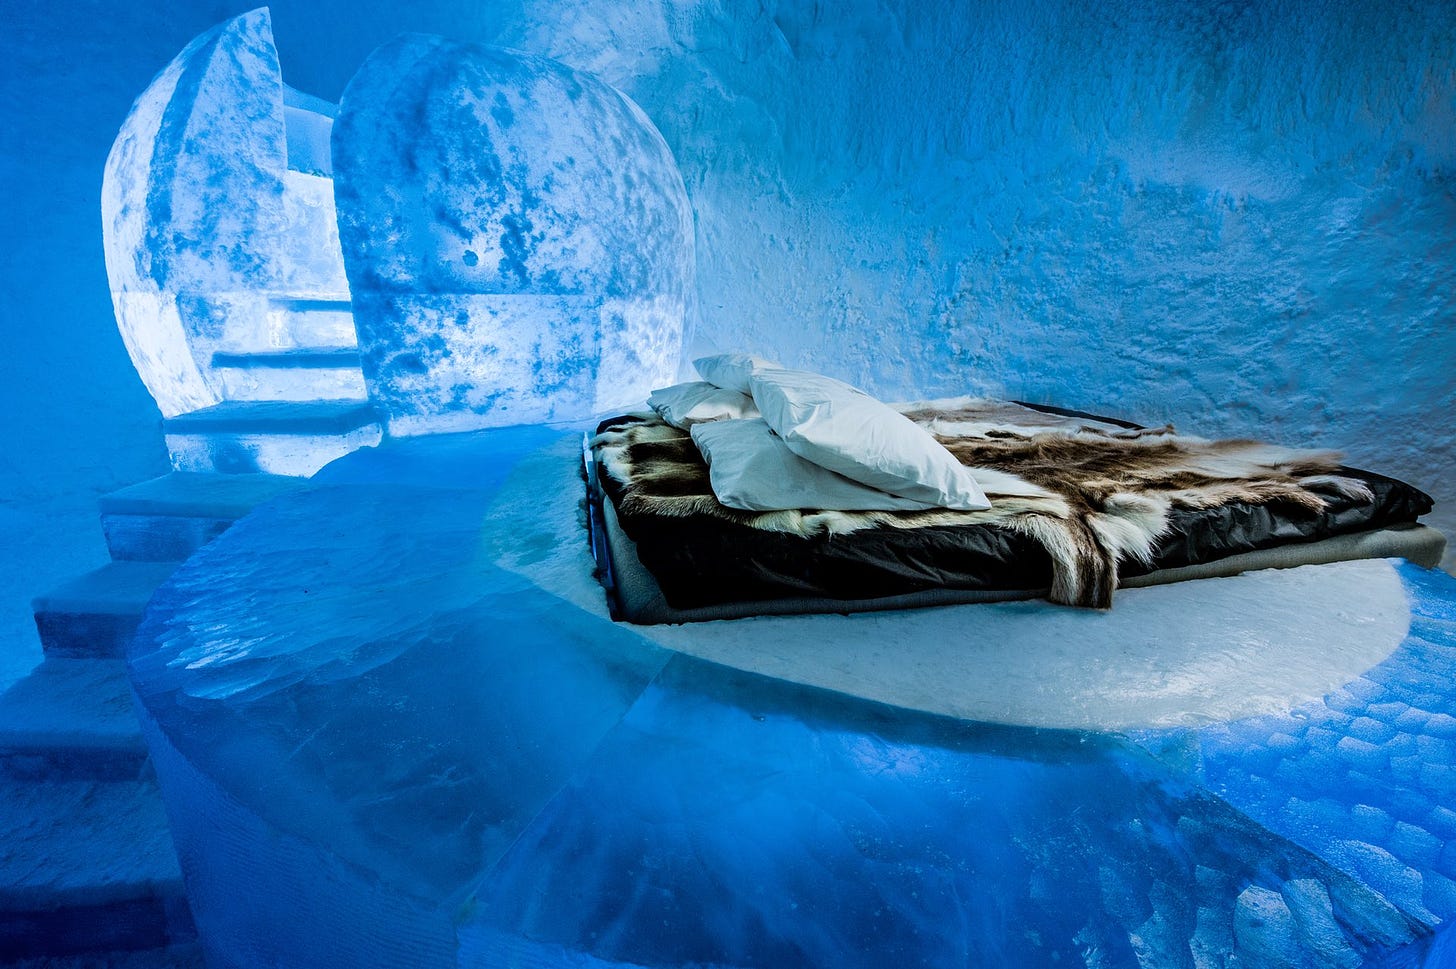 IceHotel 365, l'hotel di ghiaccio diventa permanente - Wired